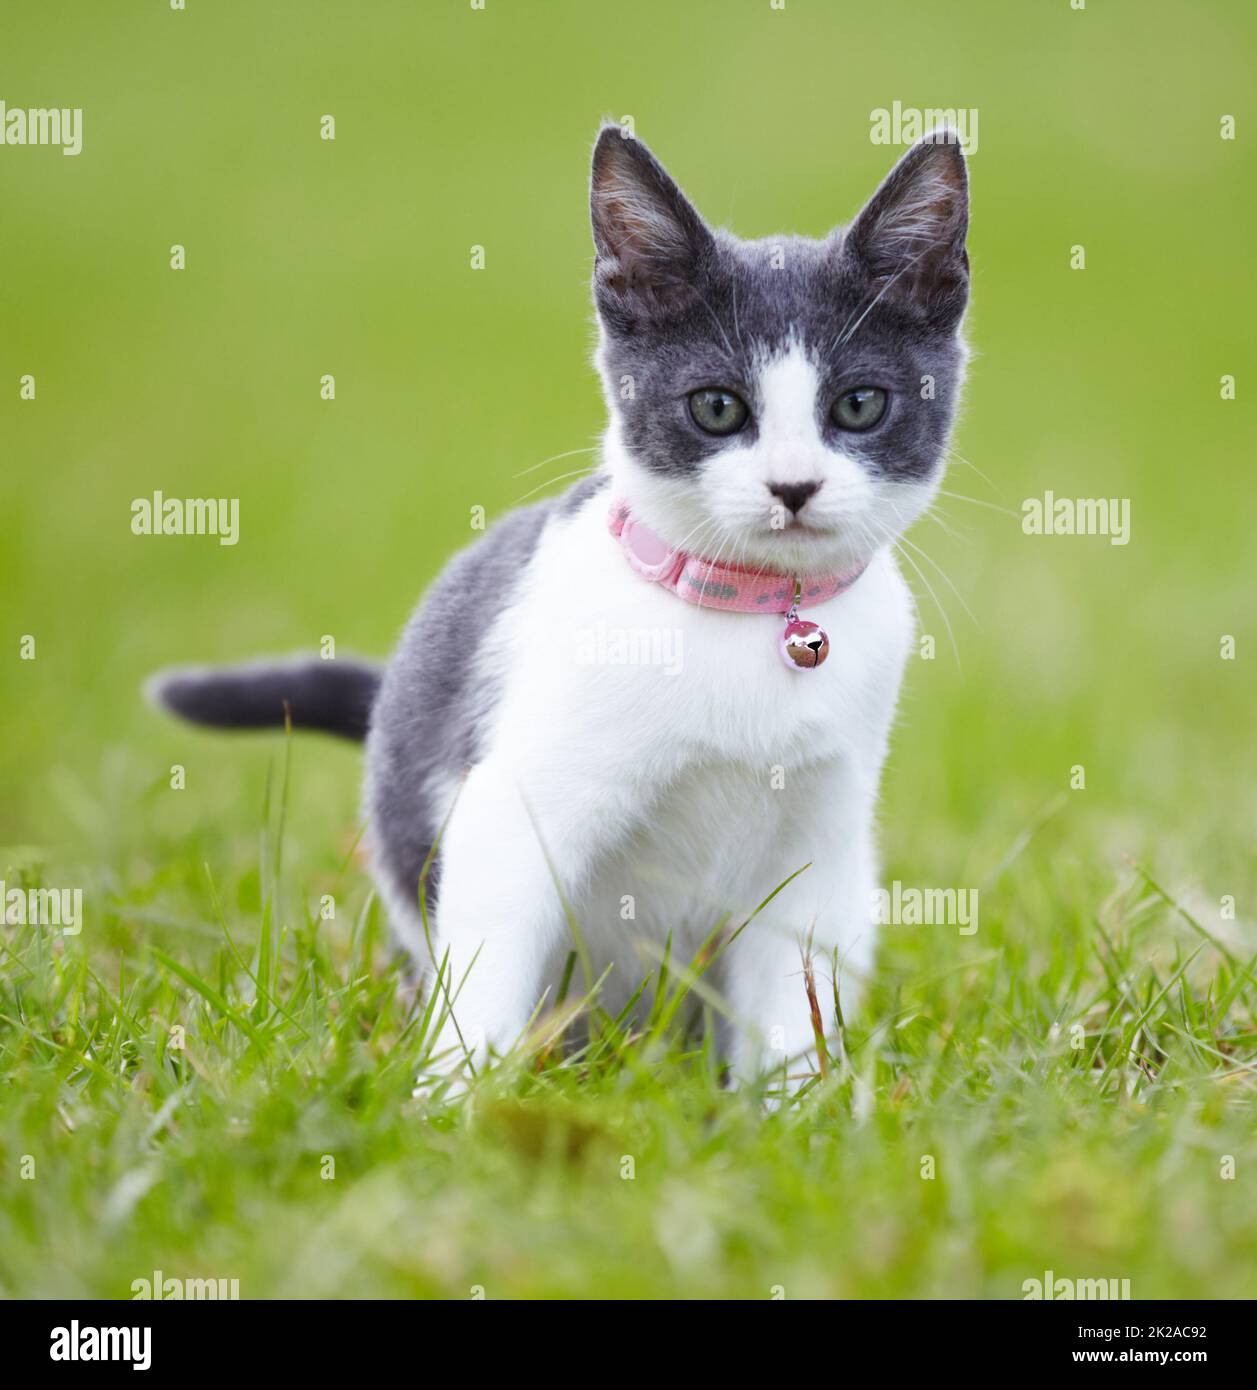 Ti dà una spavalata felina. Bel gattino grigio e bianco all'aperto sull'erba. Foto Stock